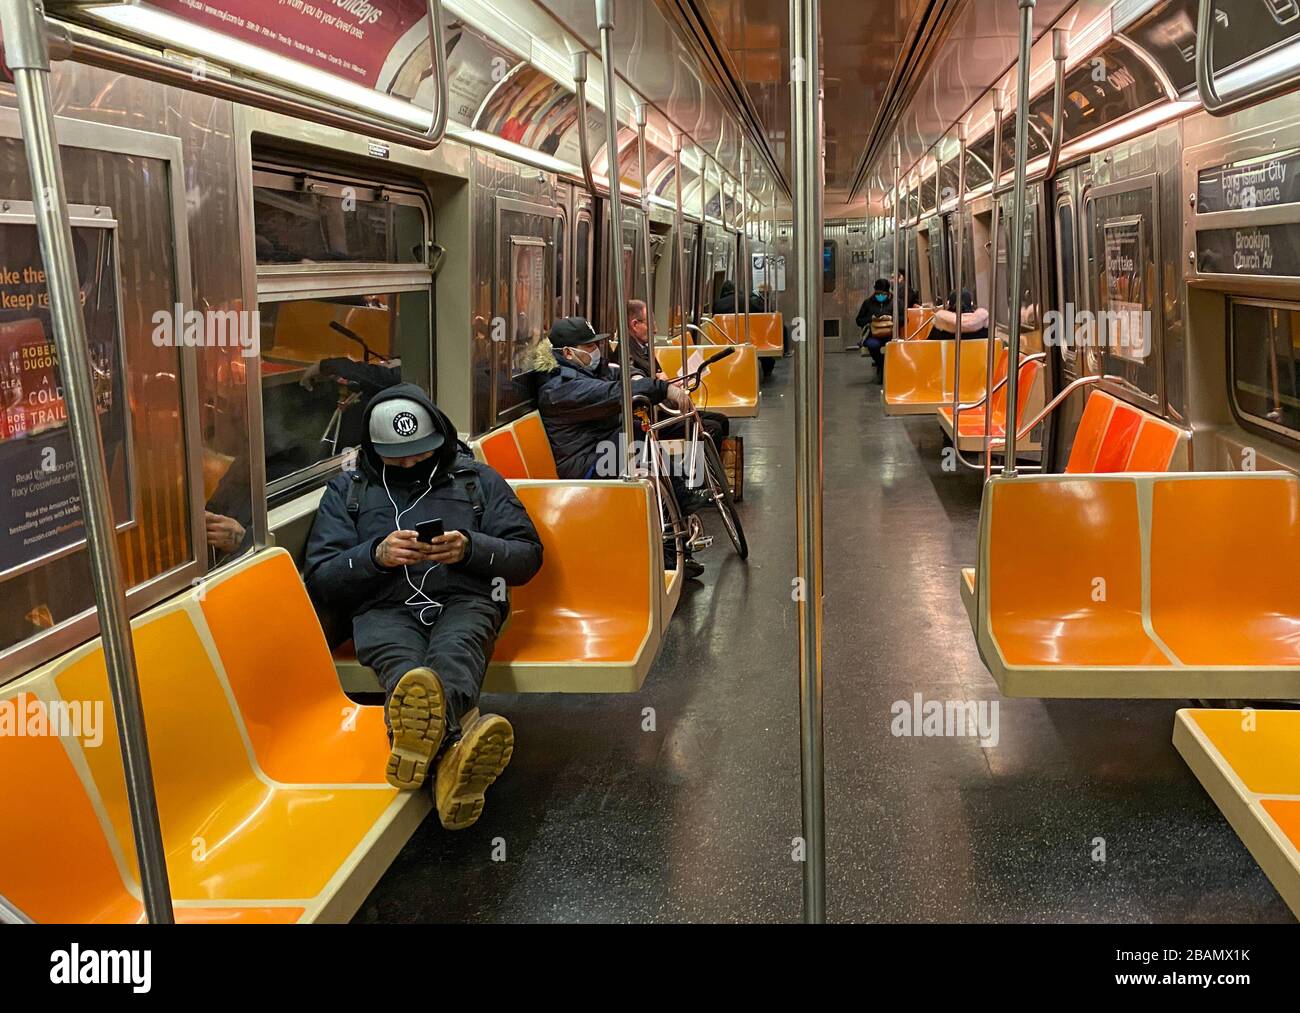 Da New York City offiziell gesperrt wurde, ist es nicht schwierig, soziale Distanzierungen auf U-Bahnen zu praktizieren, da nur relativ wenige Menschen in den Zügen fahren. Die Schiffahrt ist am 23.3.20 um mehr als 80% gesunken. Brooklyn, New York Stockfoto